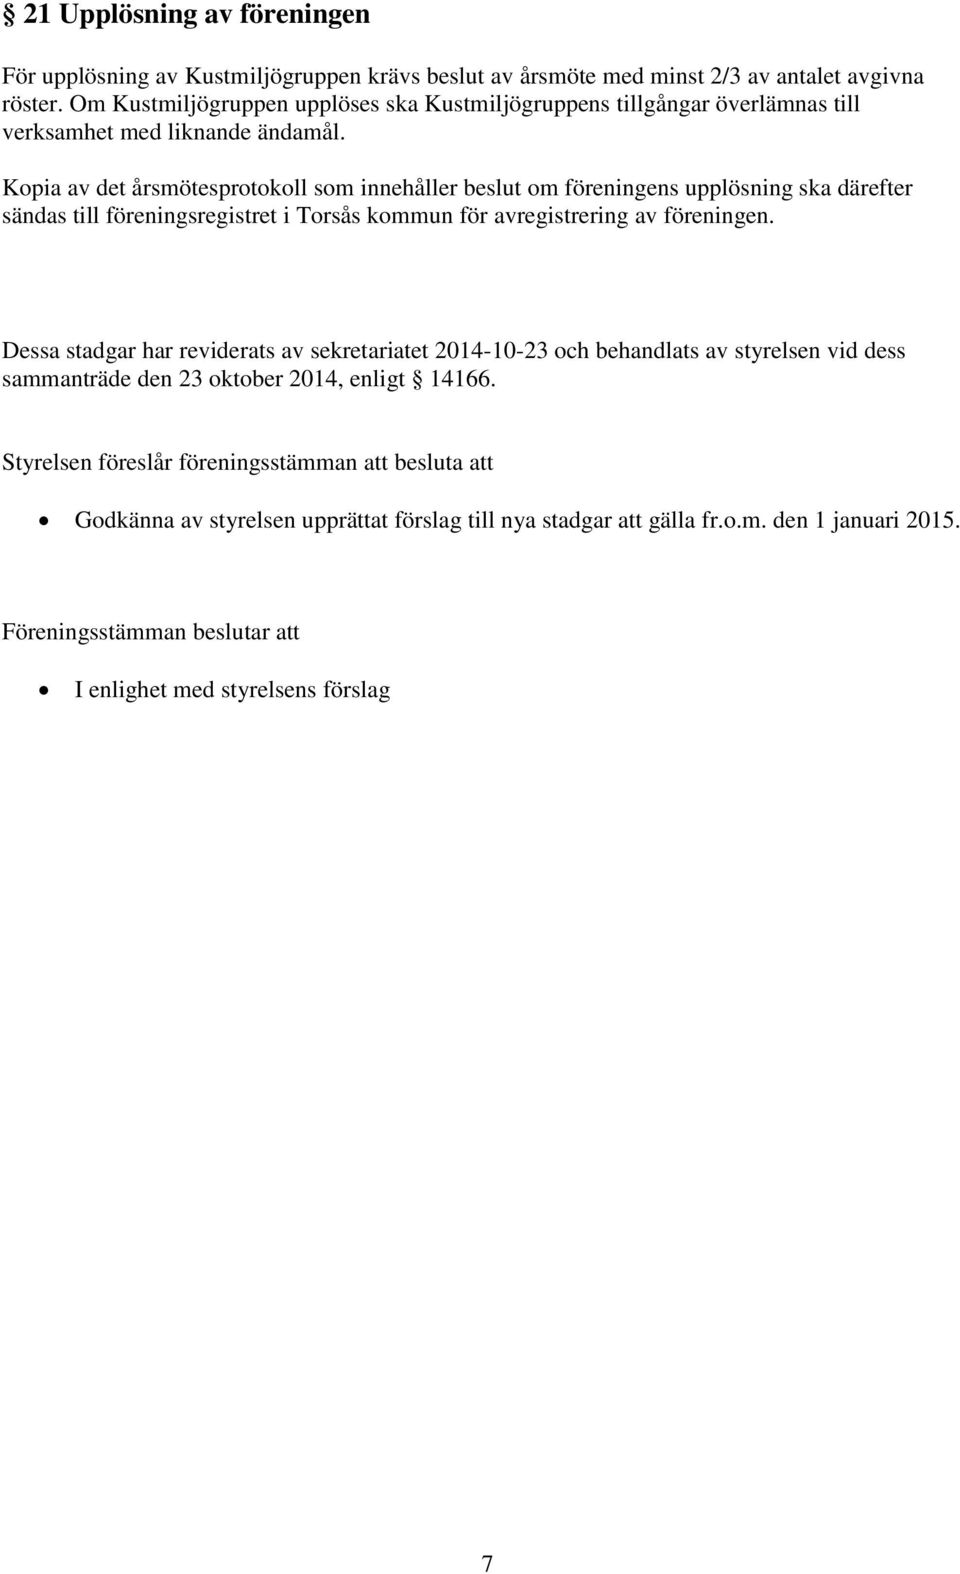 Kopia av det årsmötesprotokoll som innehåller beslut om föreningens upplösning ska därefter sändas till föreningsregistret i Torsås kommun för avregistrering av föreningen.